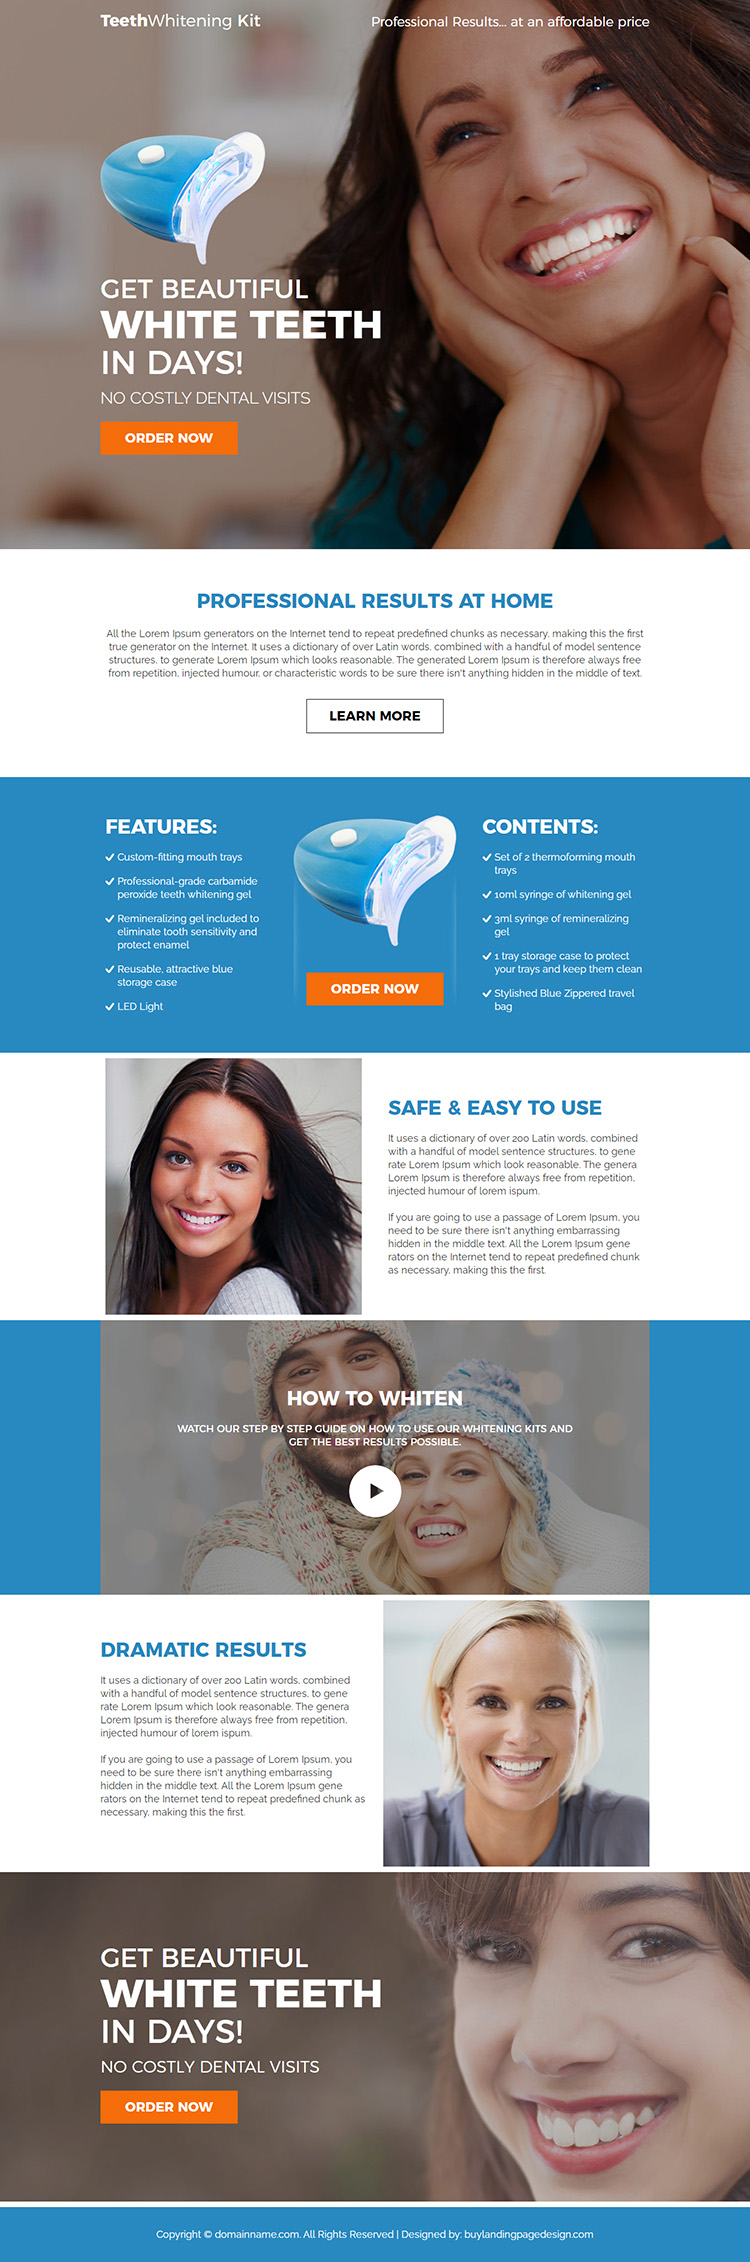 teeth whitening kit responsive landing page design